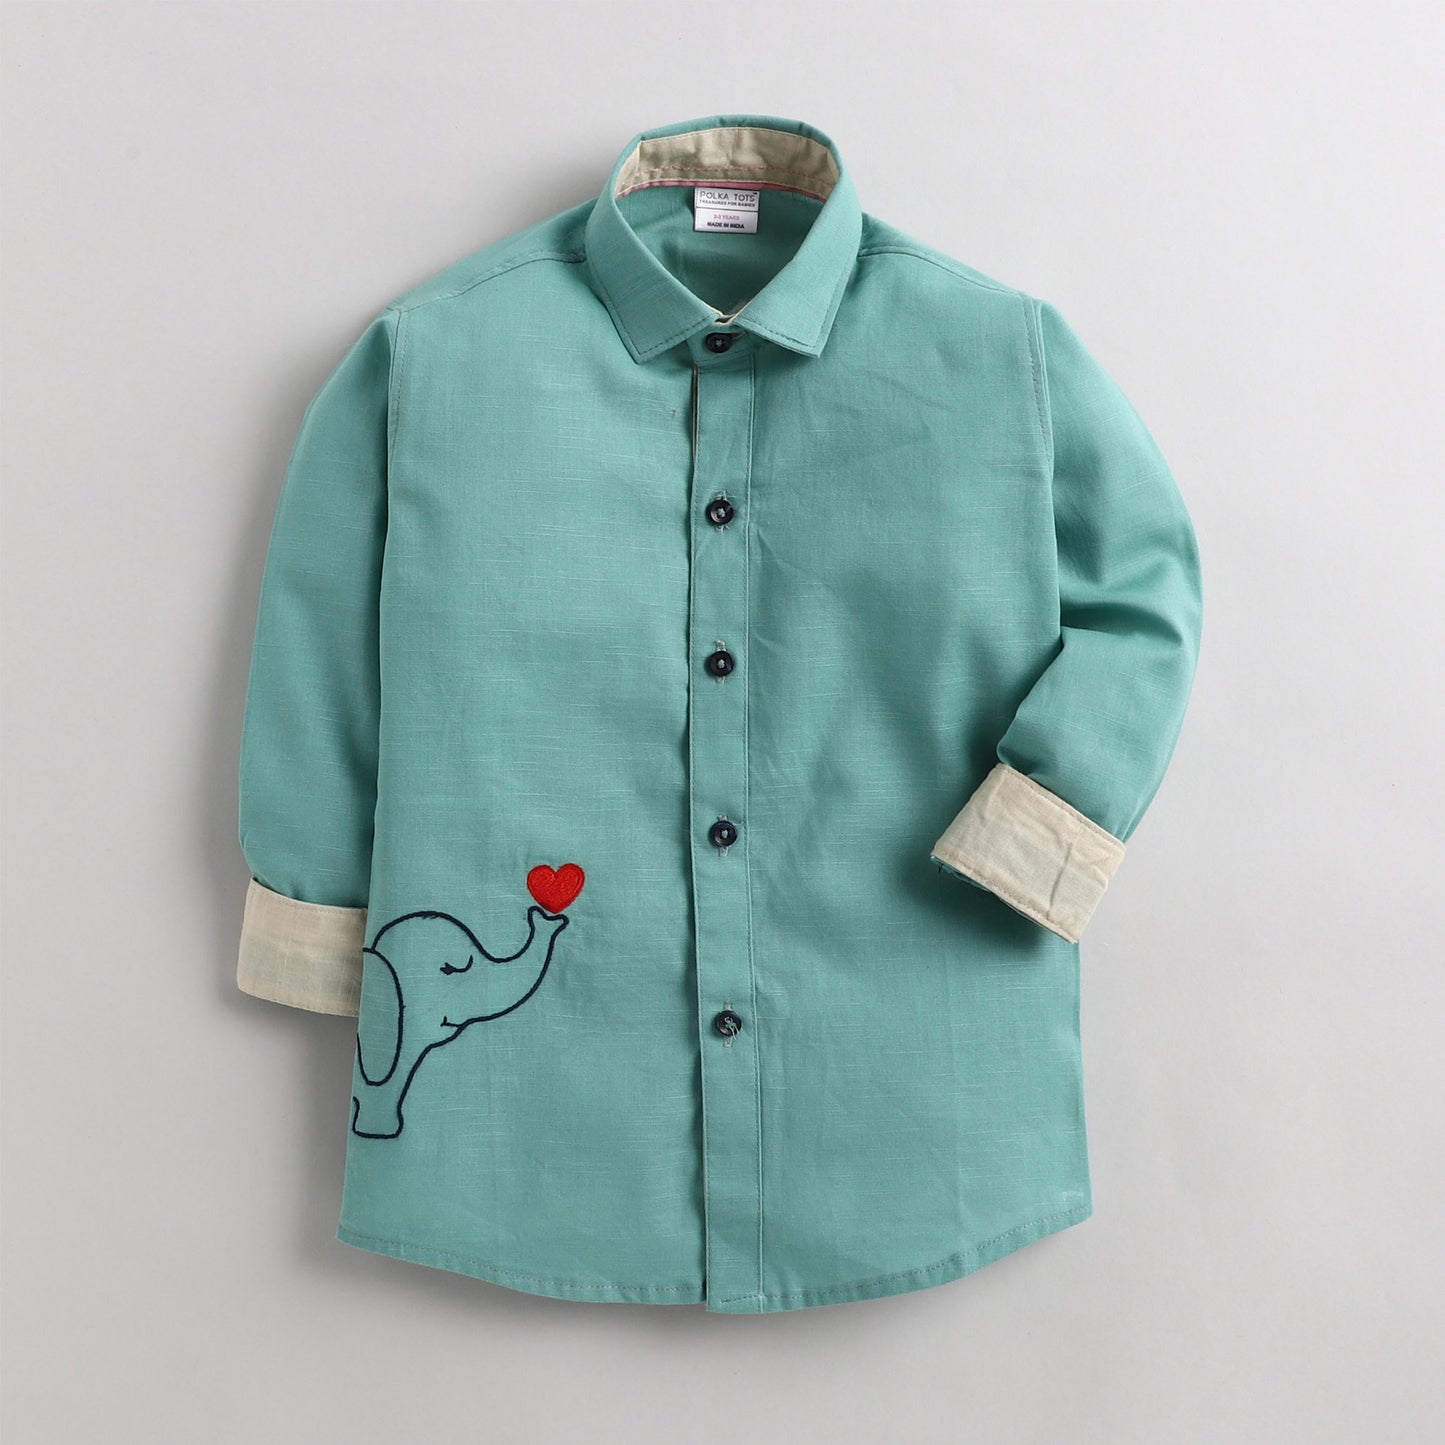 Polka Tots Full Sleeve Shirt Lovely Baby Elephant Character - Green